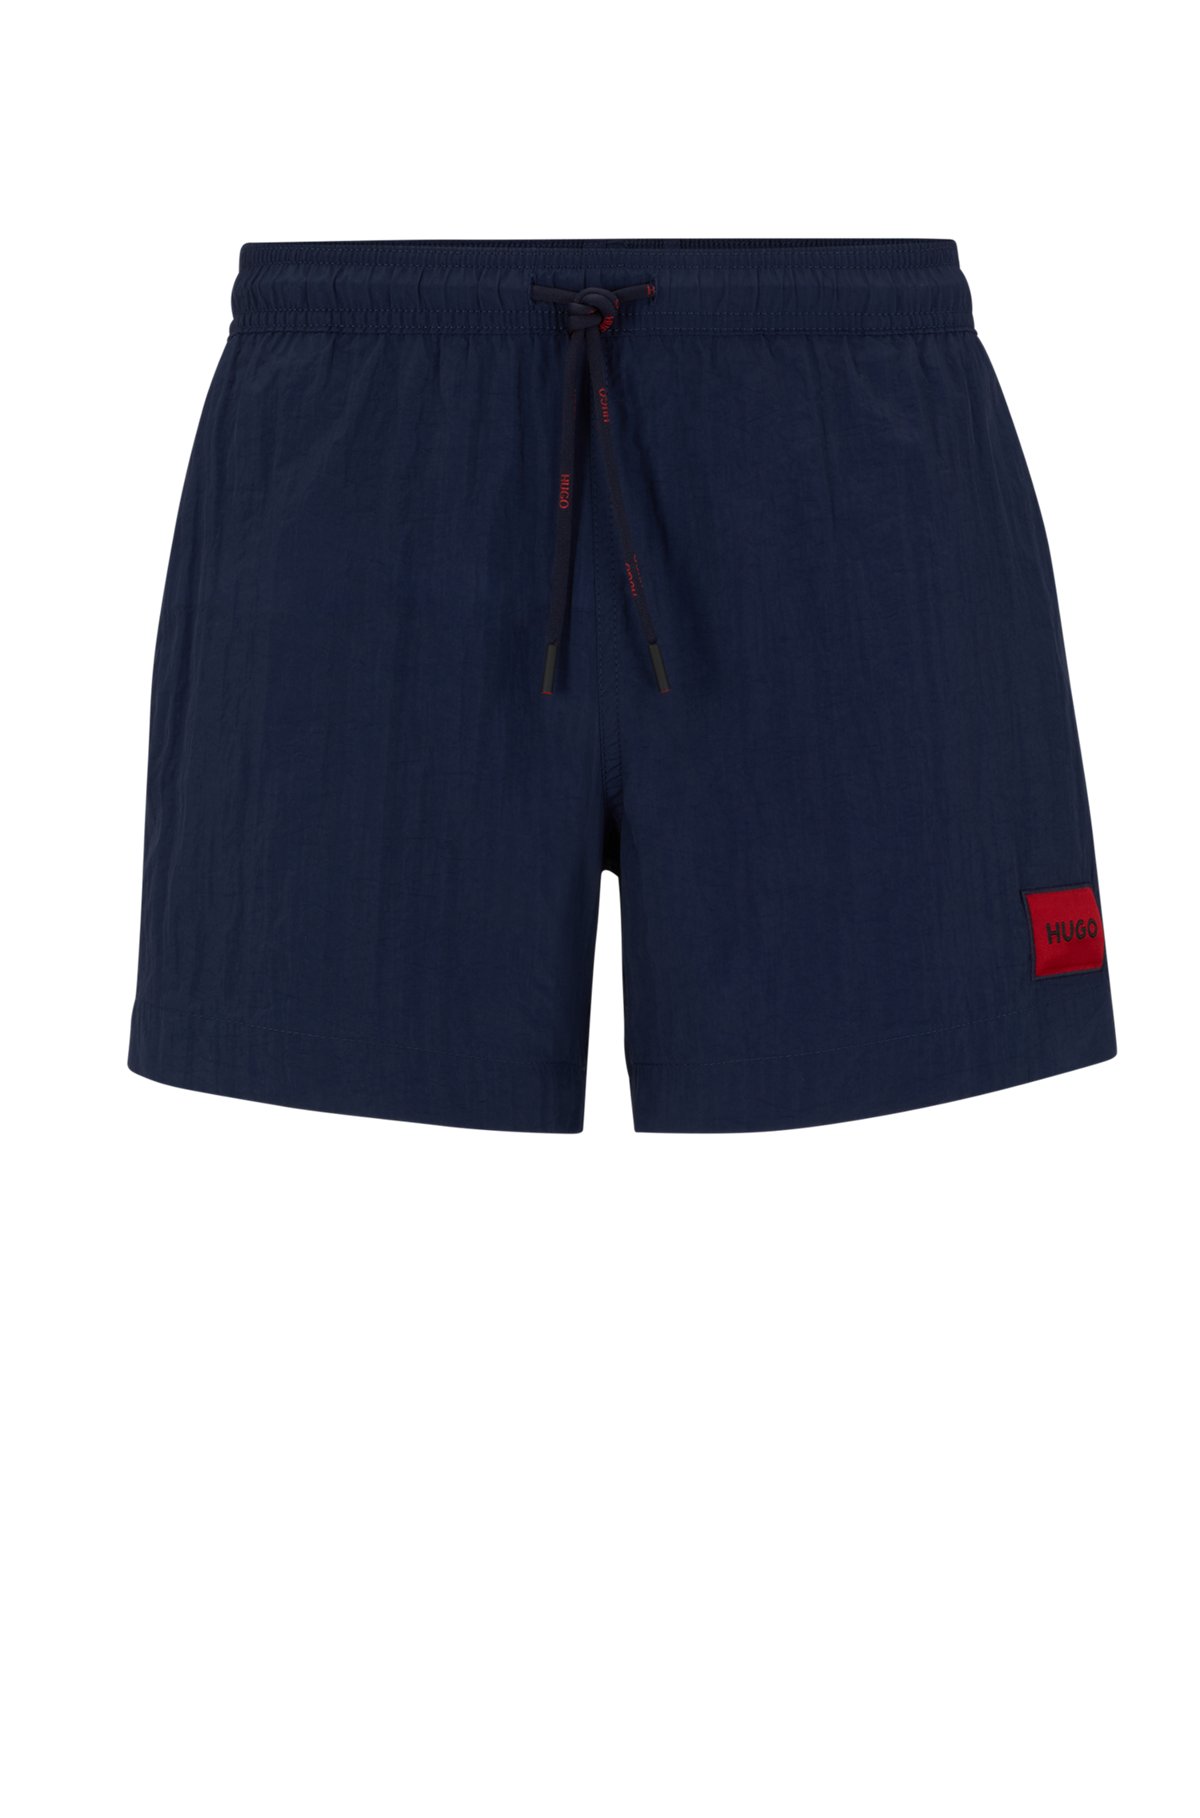 Bañador tipo shorts de secado rápido con etiqueta con logo roja, Azul oscuro